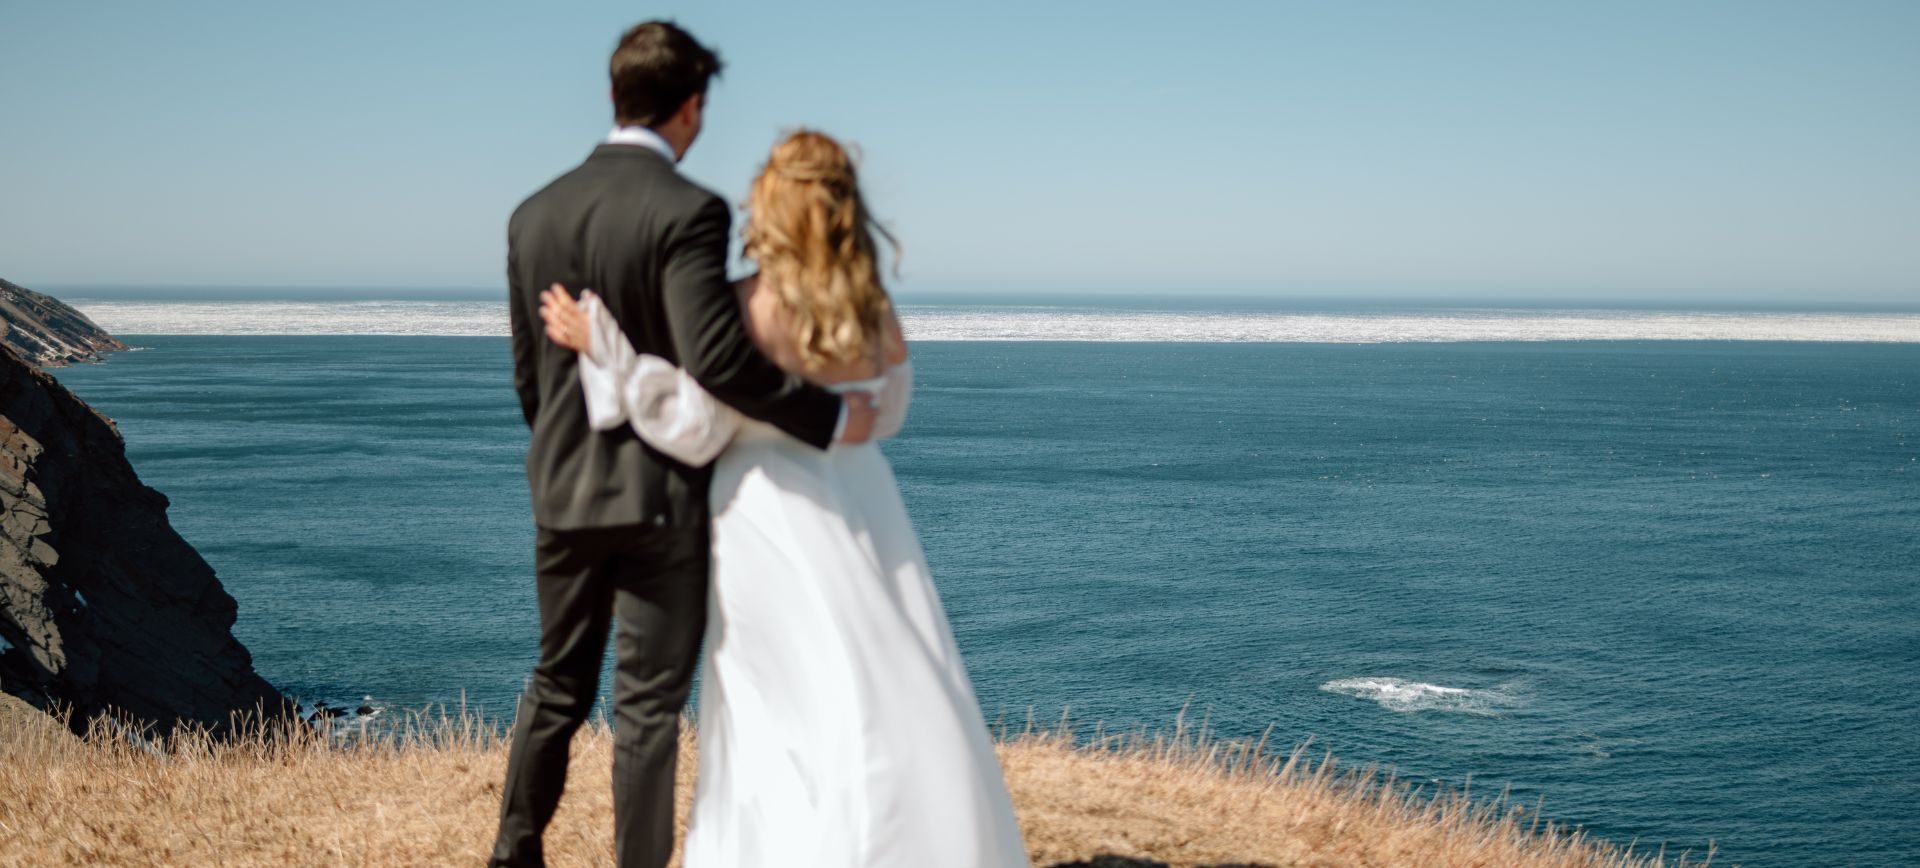 elope to nova scotia cape breton island adventure wedding canada